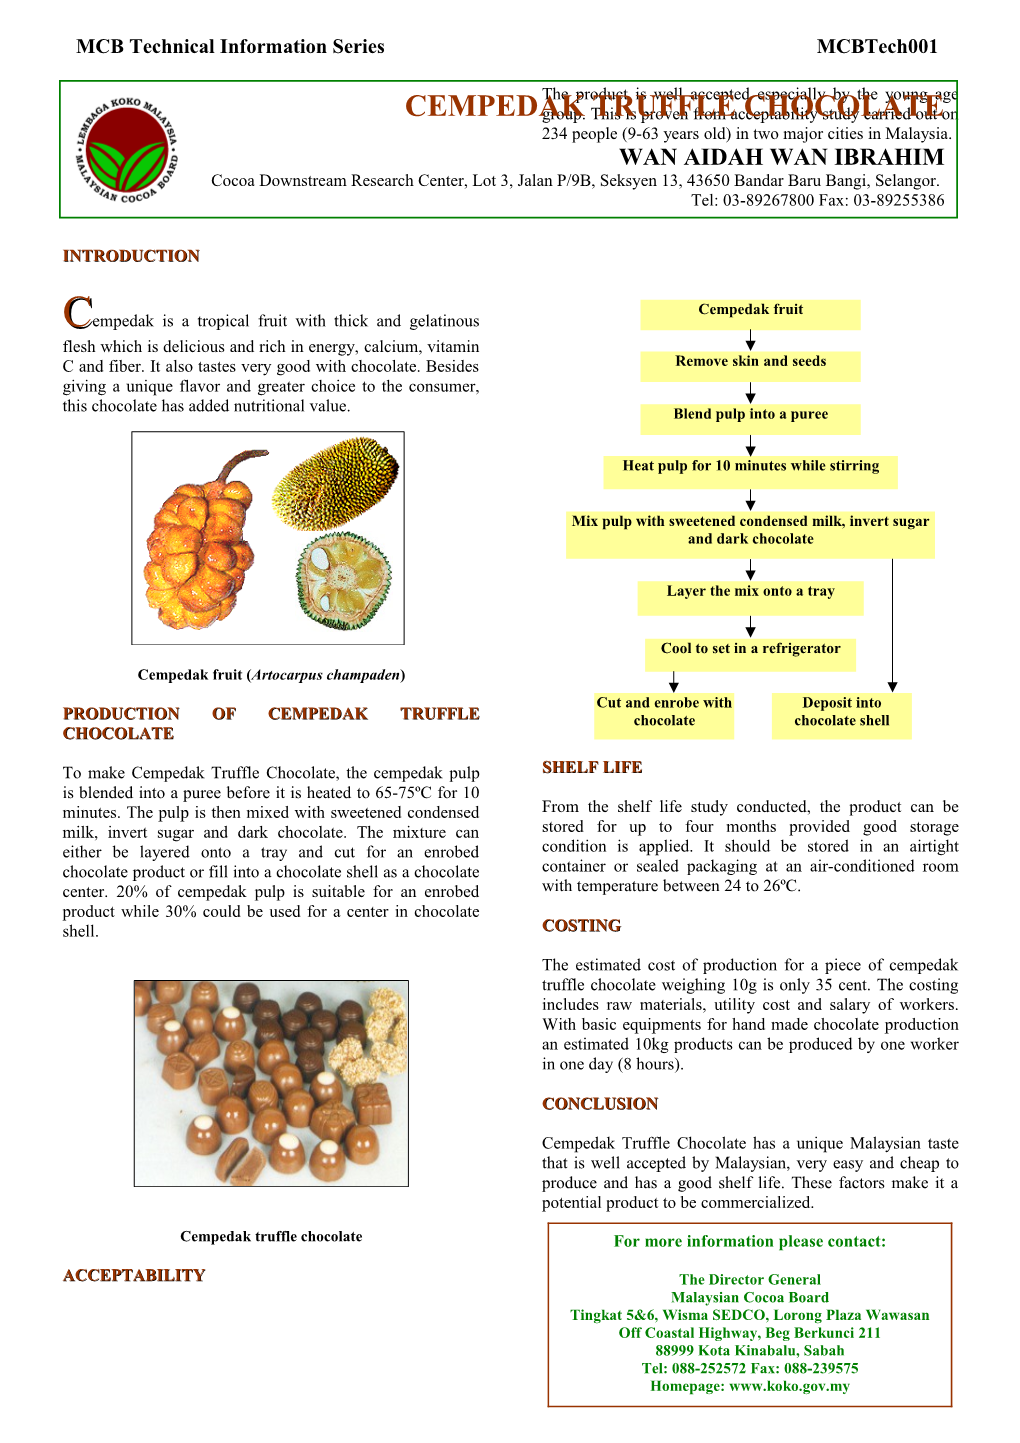 Cempedak Fruit (Artocarpus Champaden)